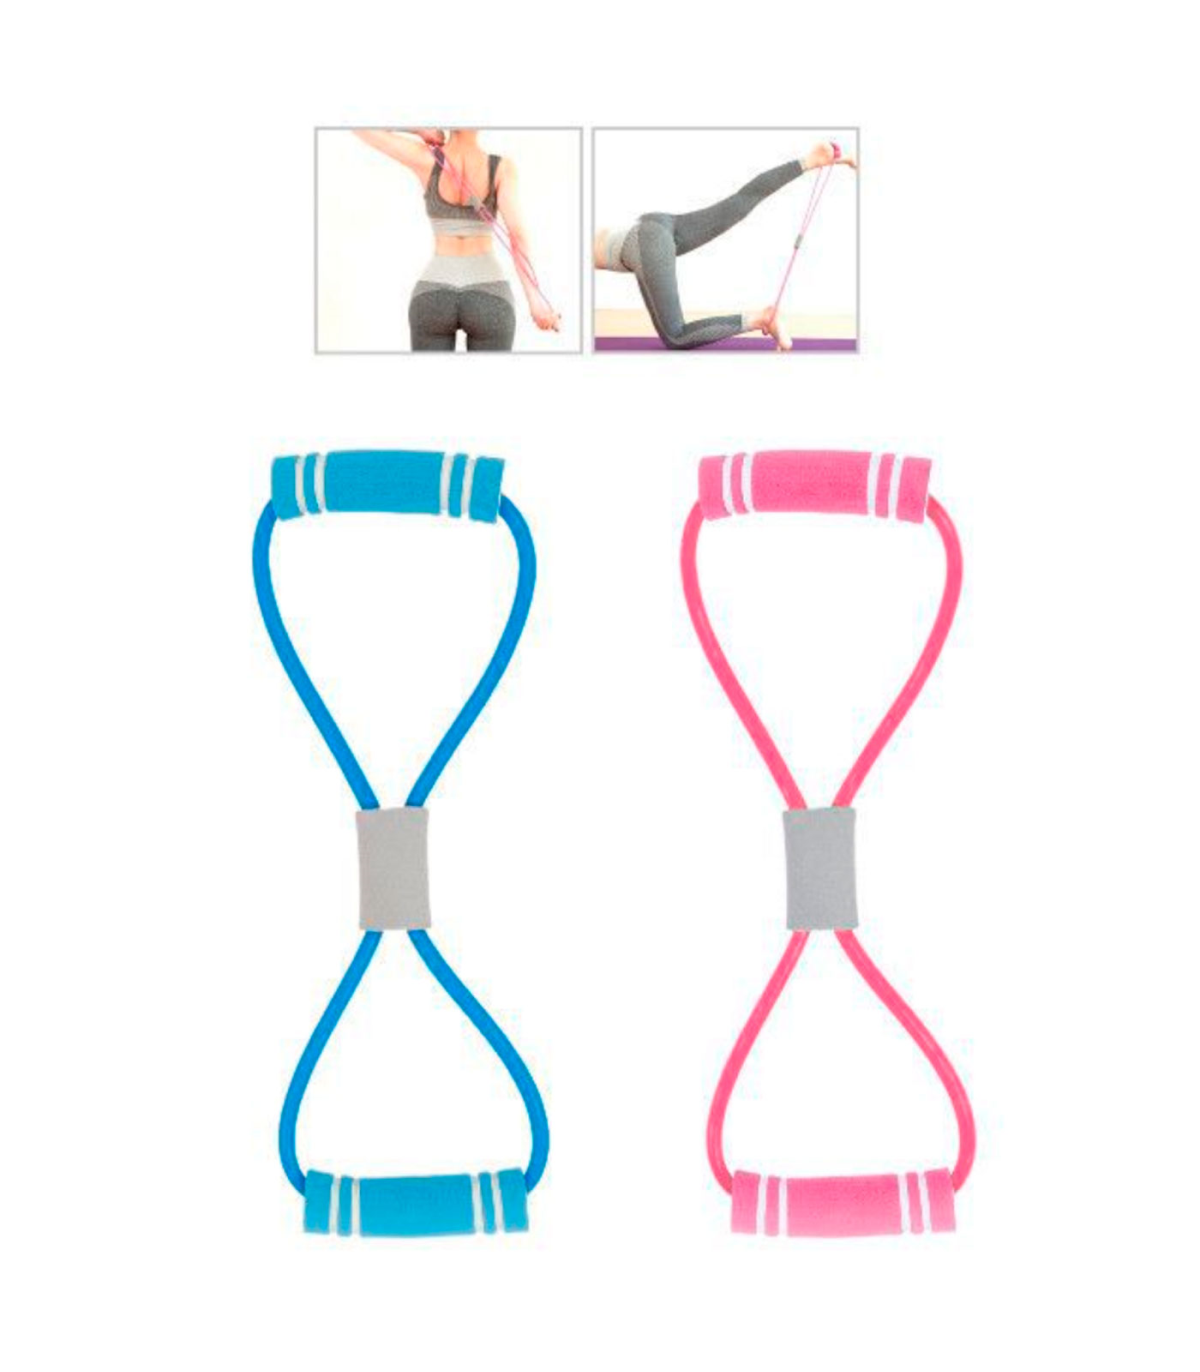 ejercicios cinta elastica - Buscar con Google  Ejercicios con banda,  Ejercicios con banda elastica, Ejercicios de estiramiento